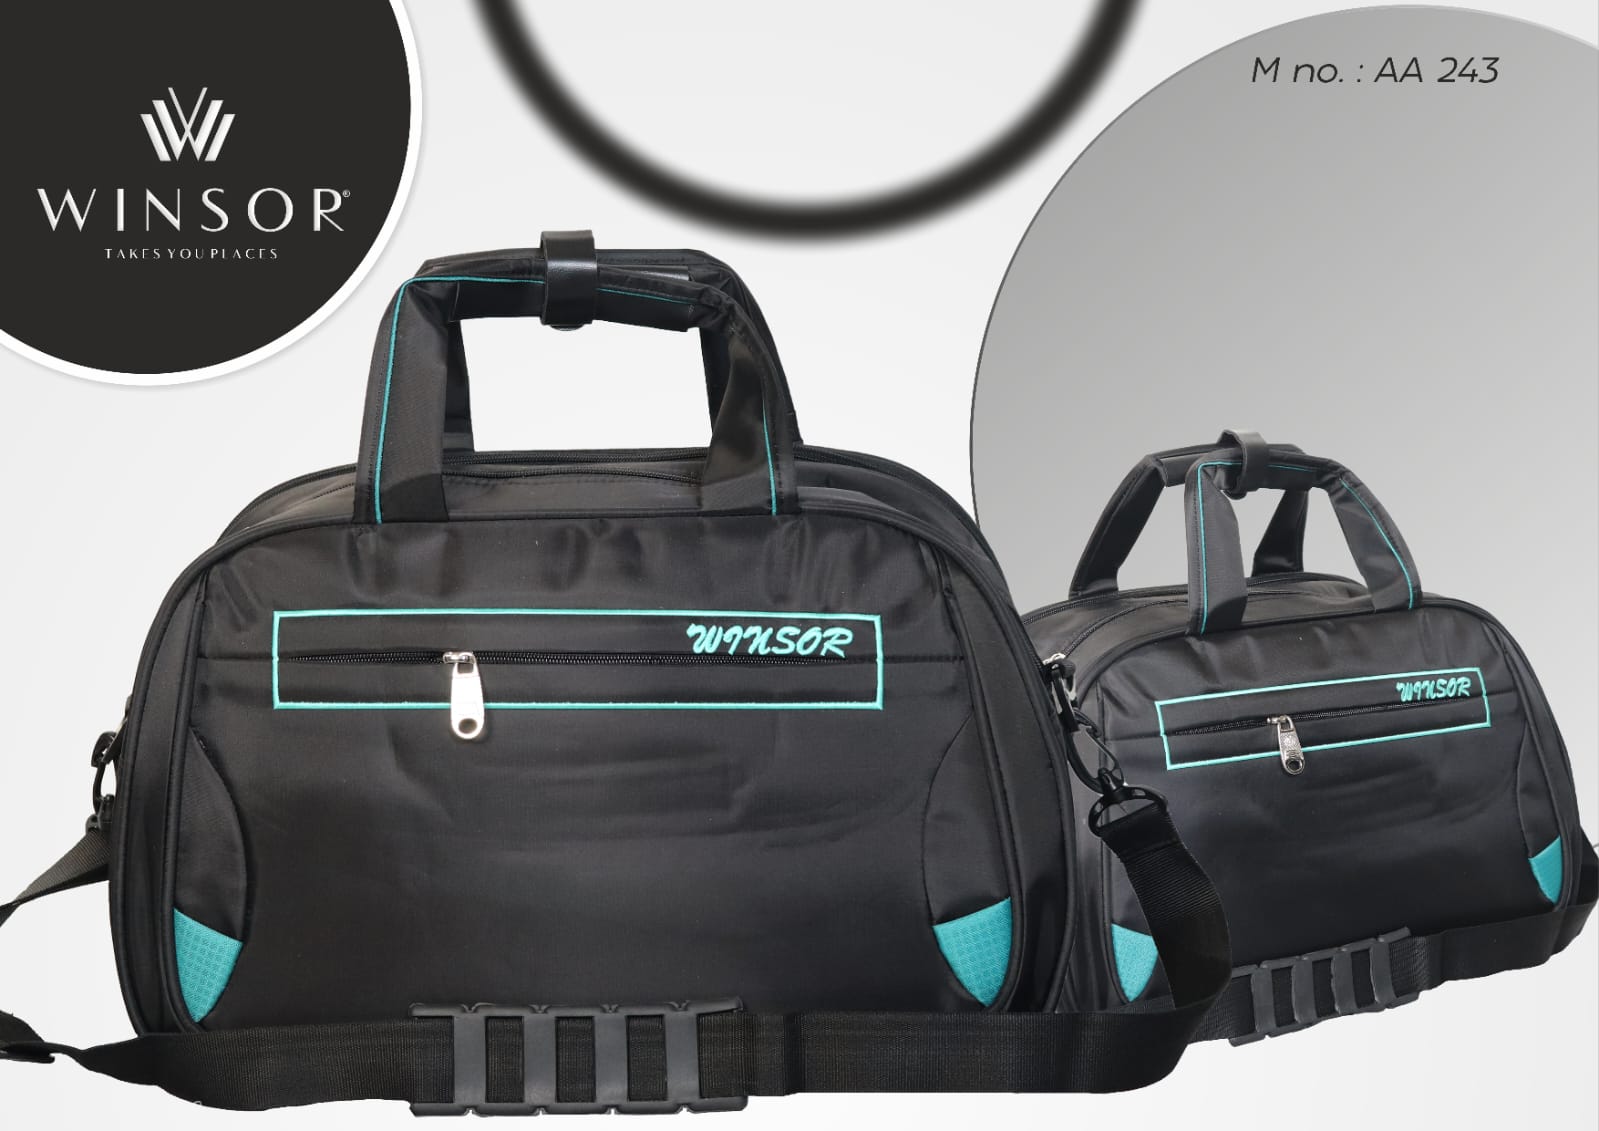 Winsor Backpack Cum USB Port Laptop Bag 25 L Laptop Backpack Black - Price  in India | Flipkart.com